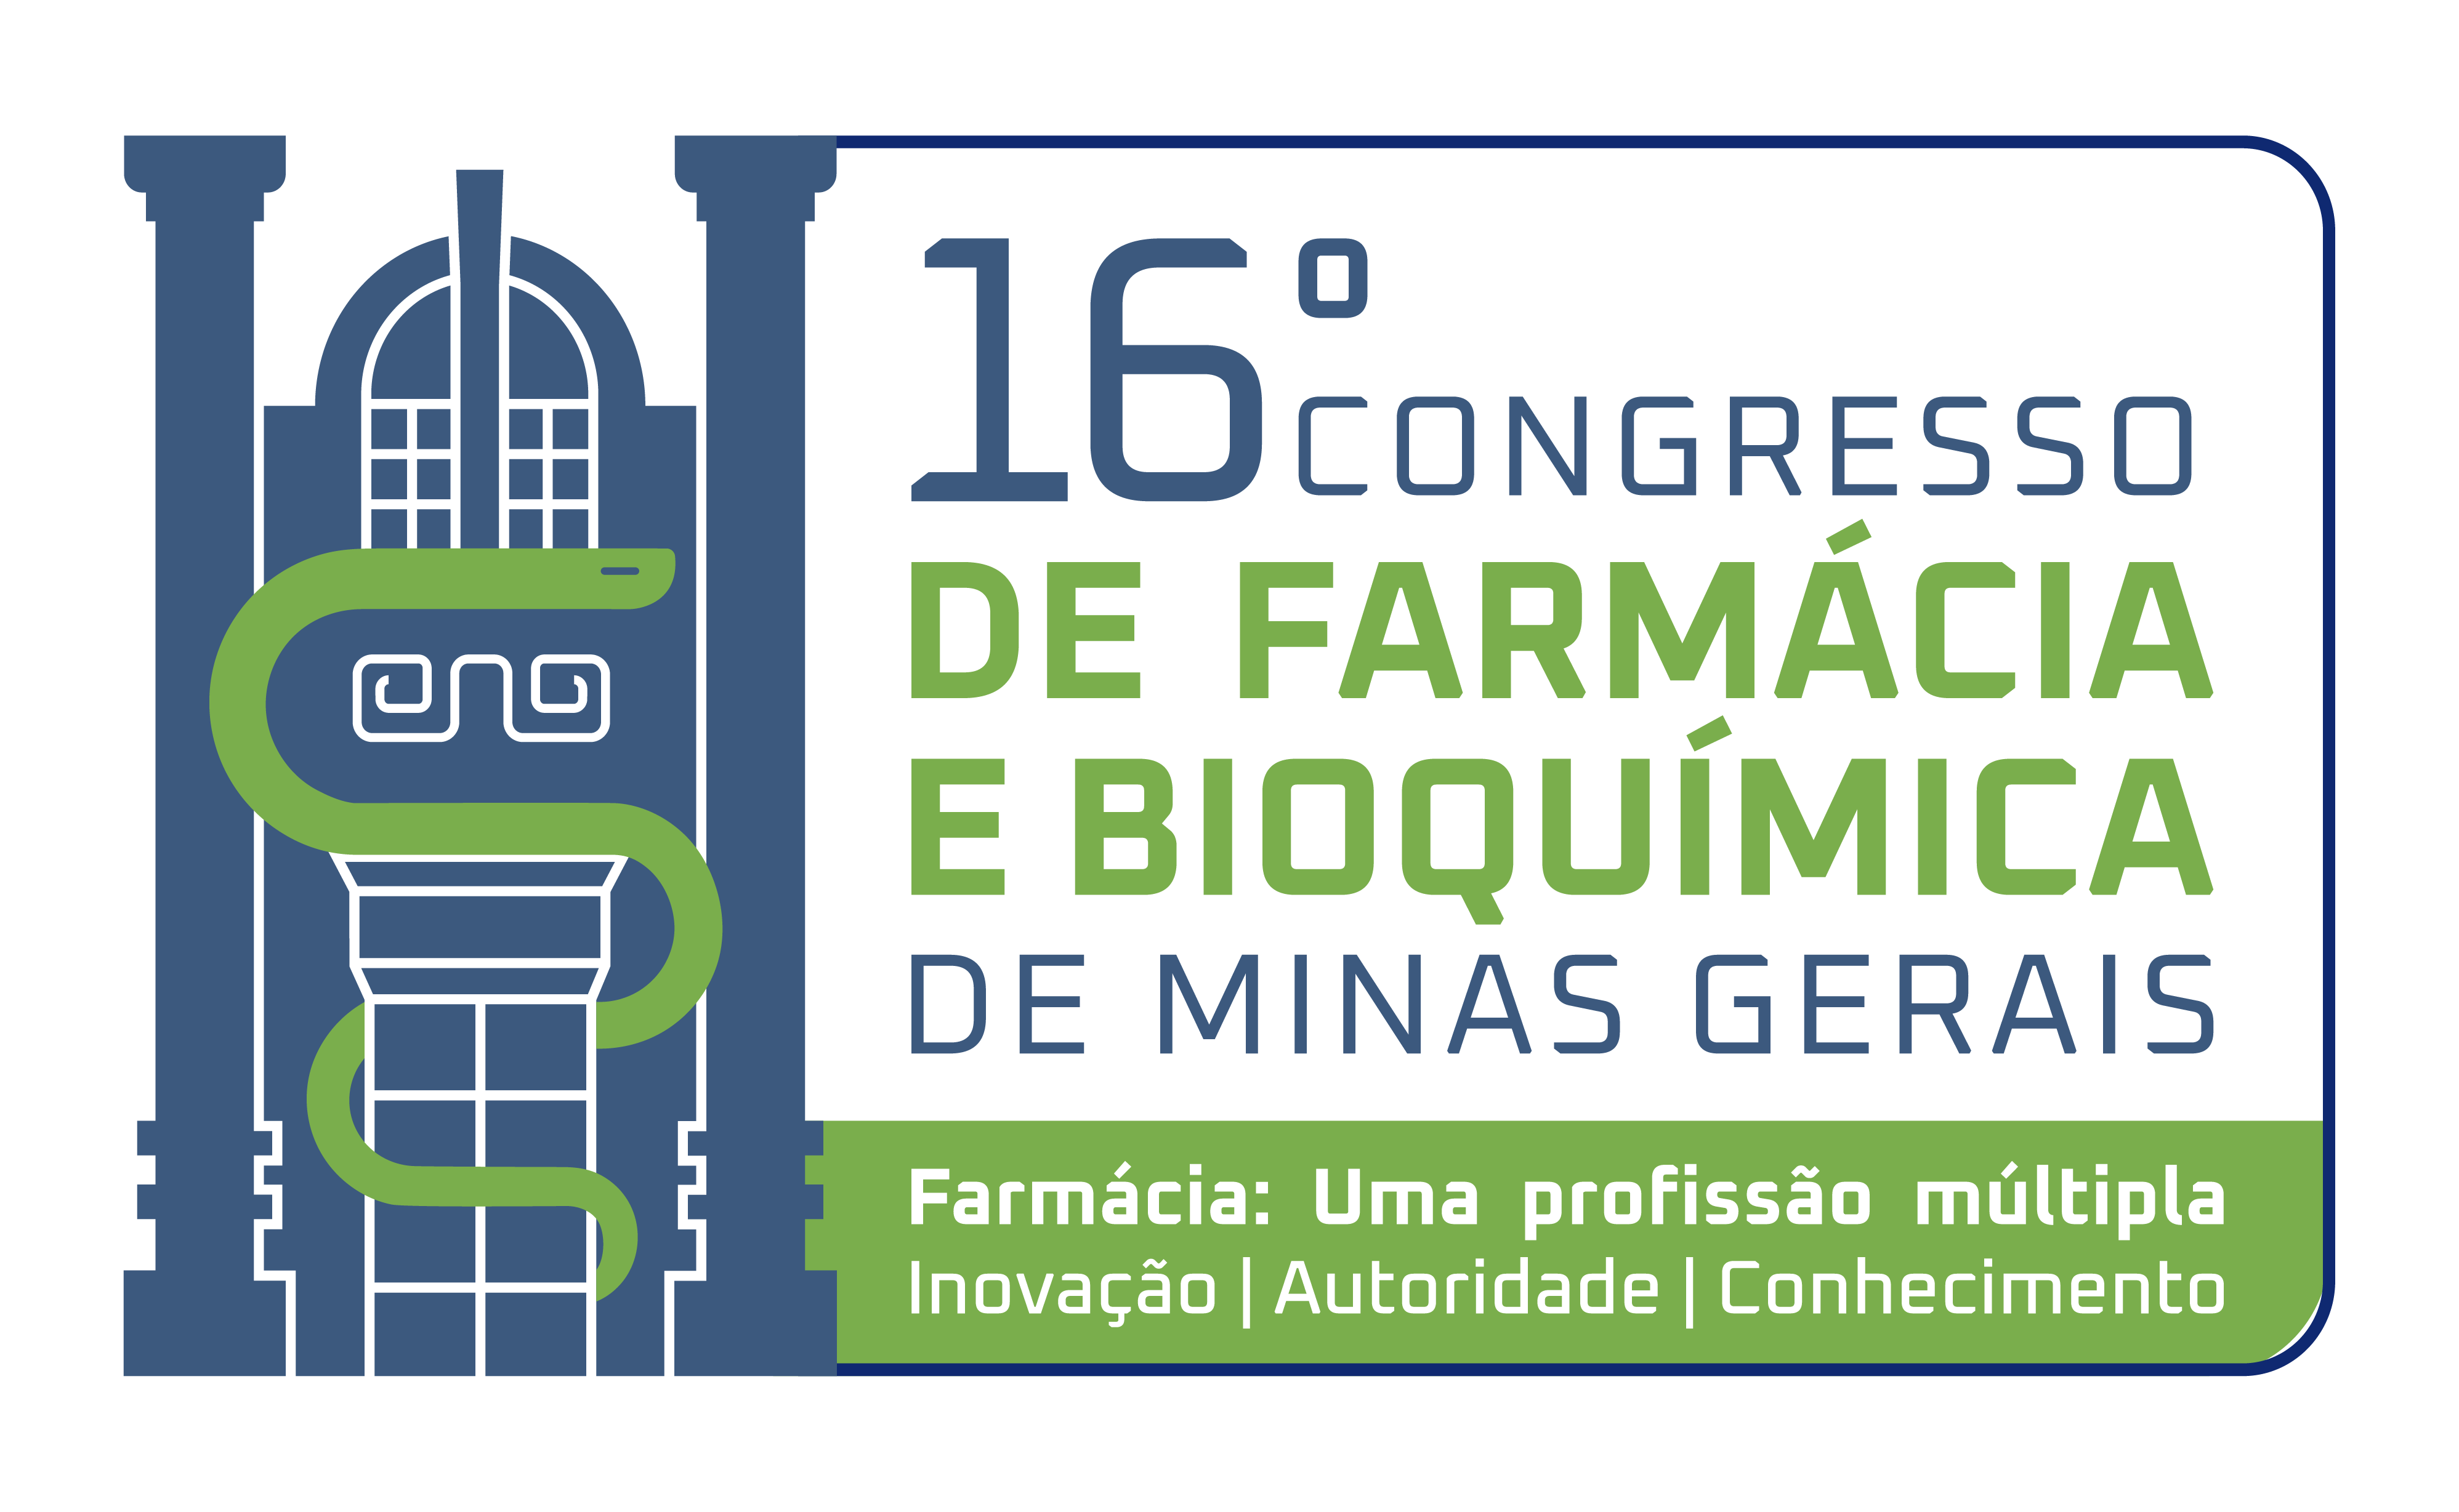 16º Congresso de Farmácia e Bioquímica de Minas Gerais